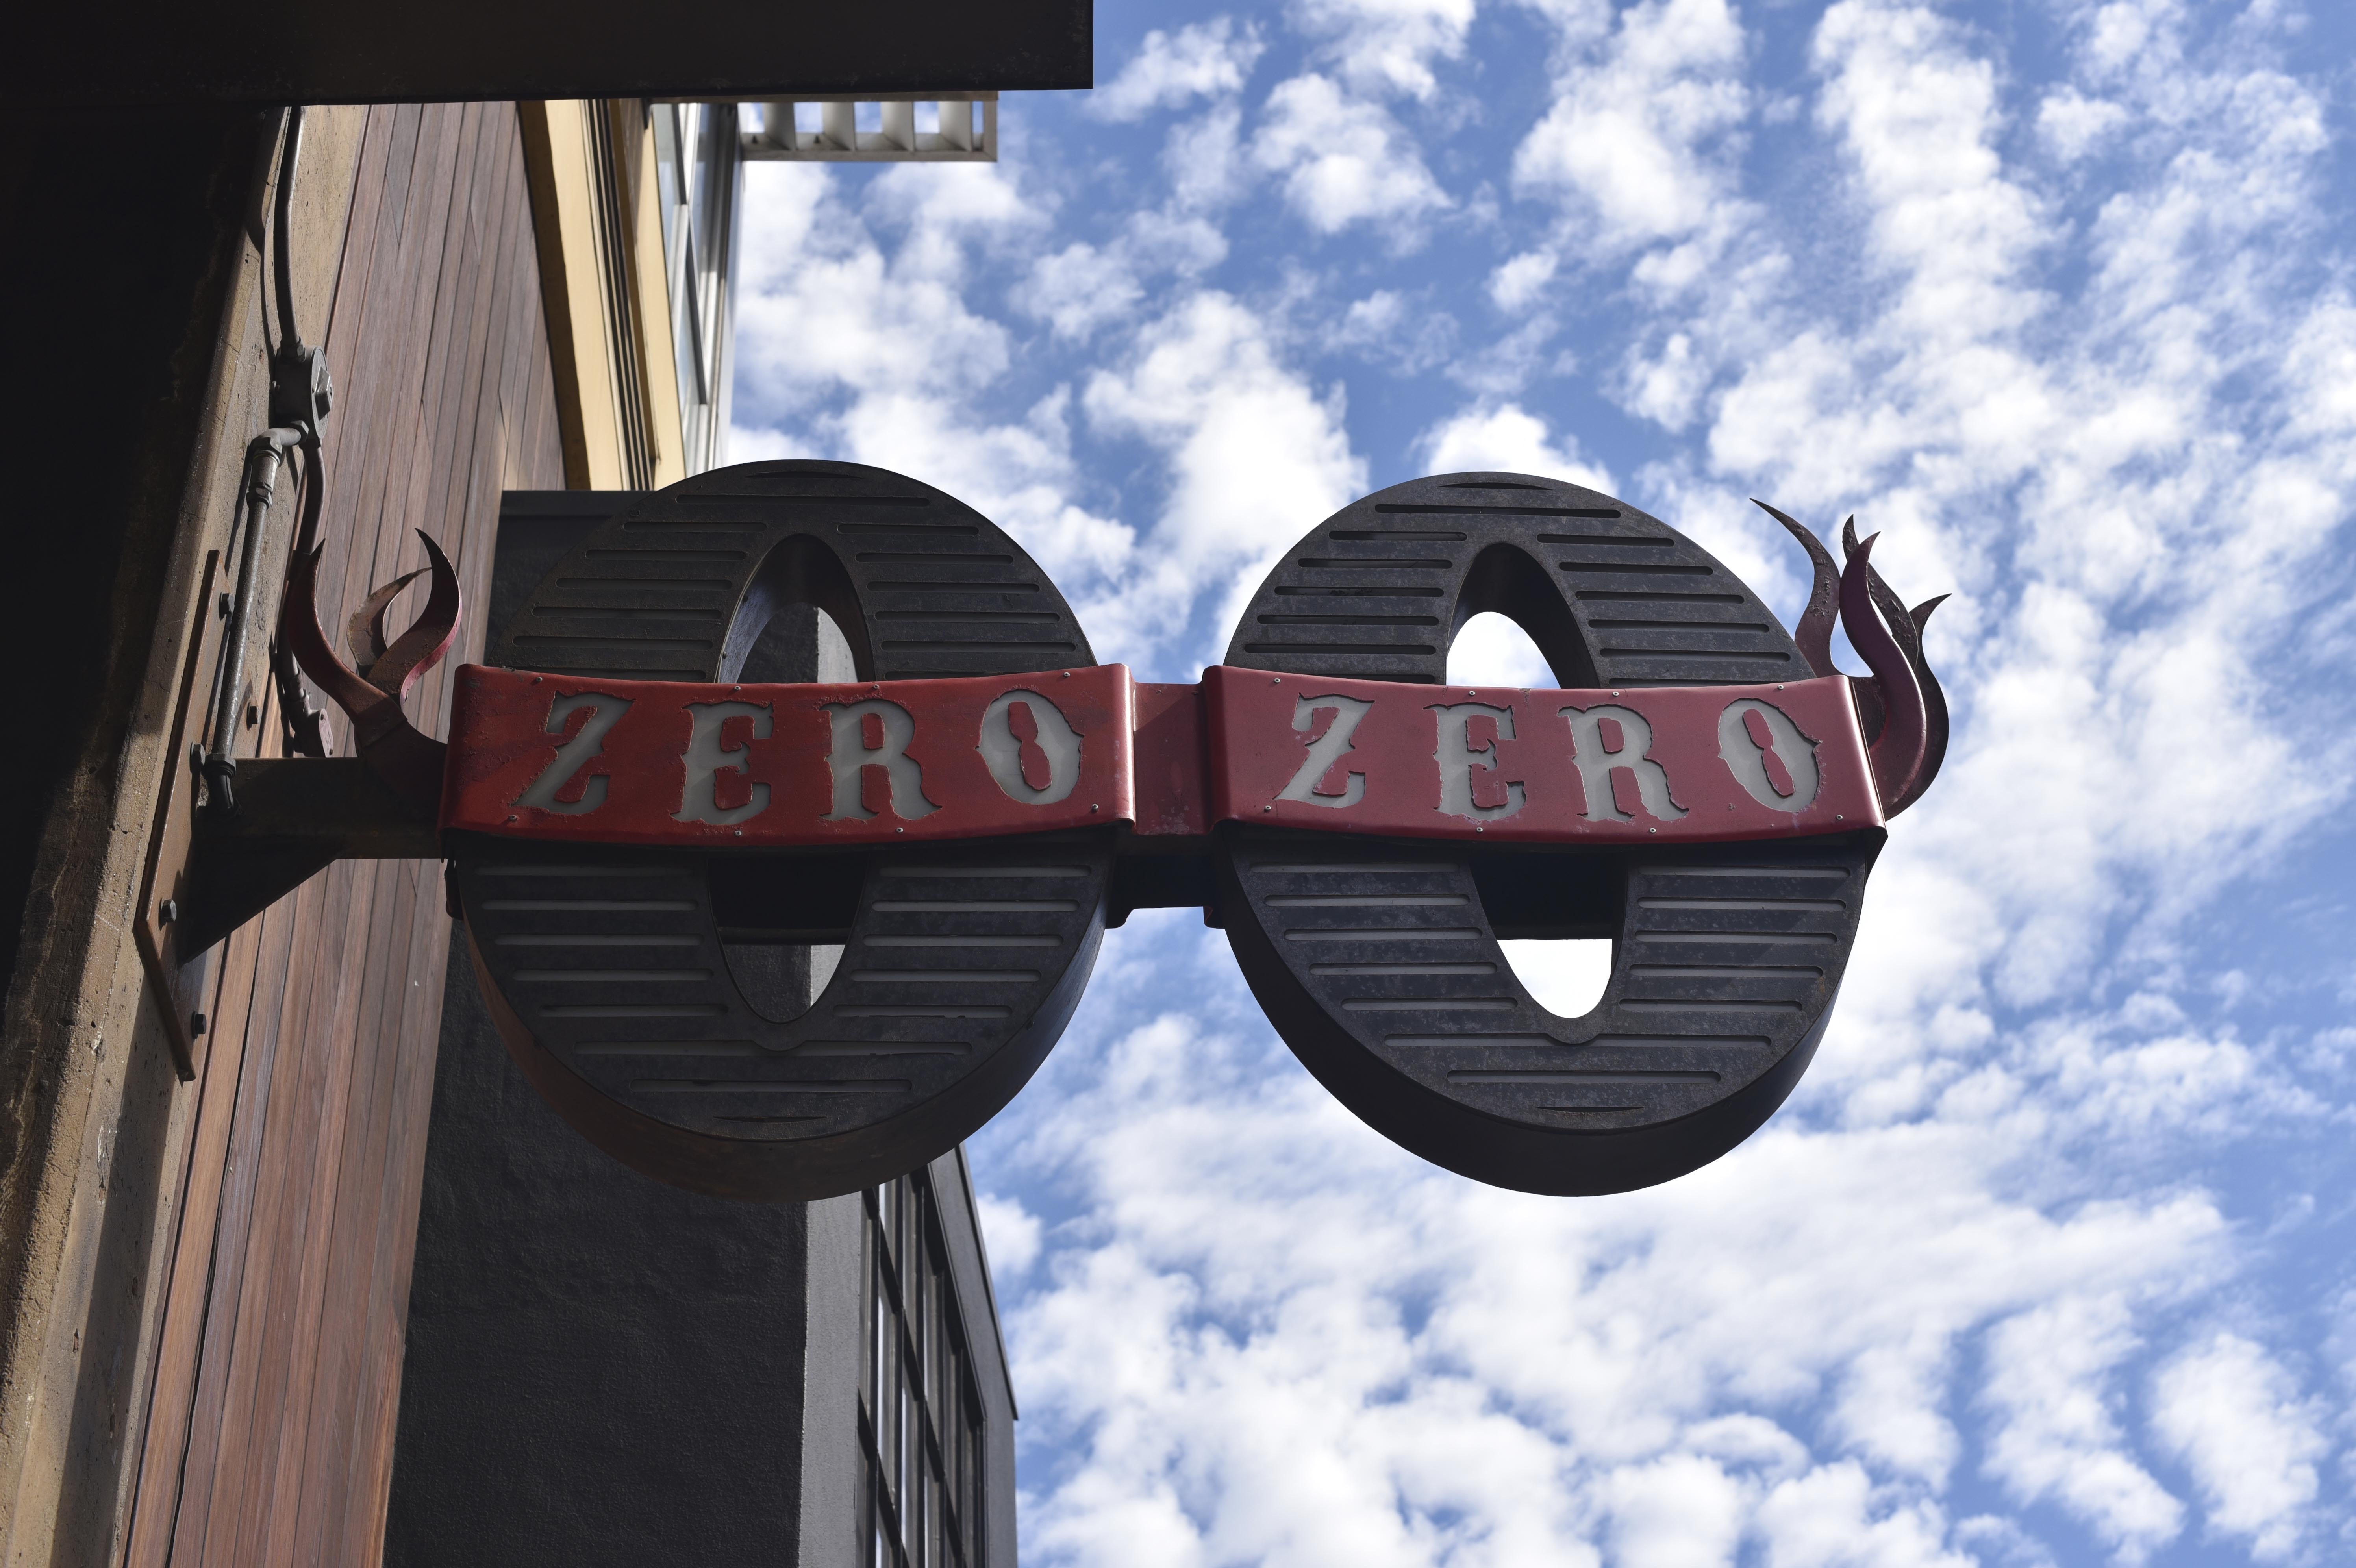 Zero Zero and the clouds 